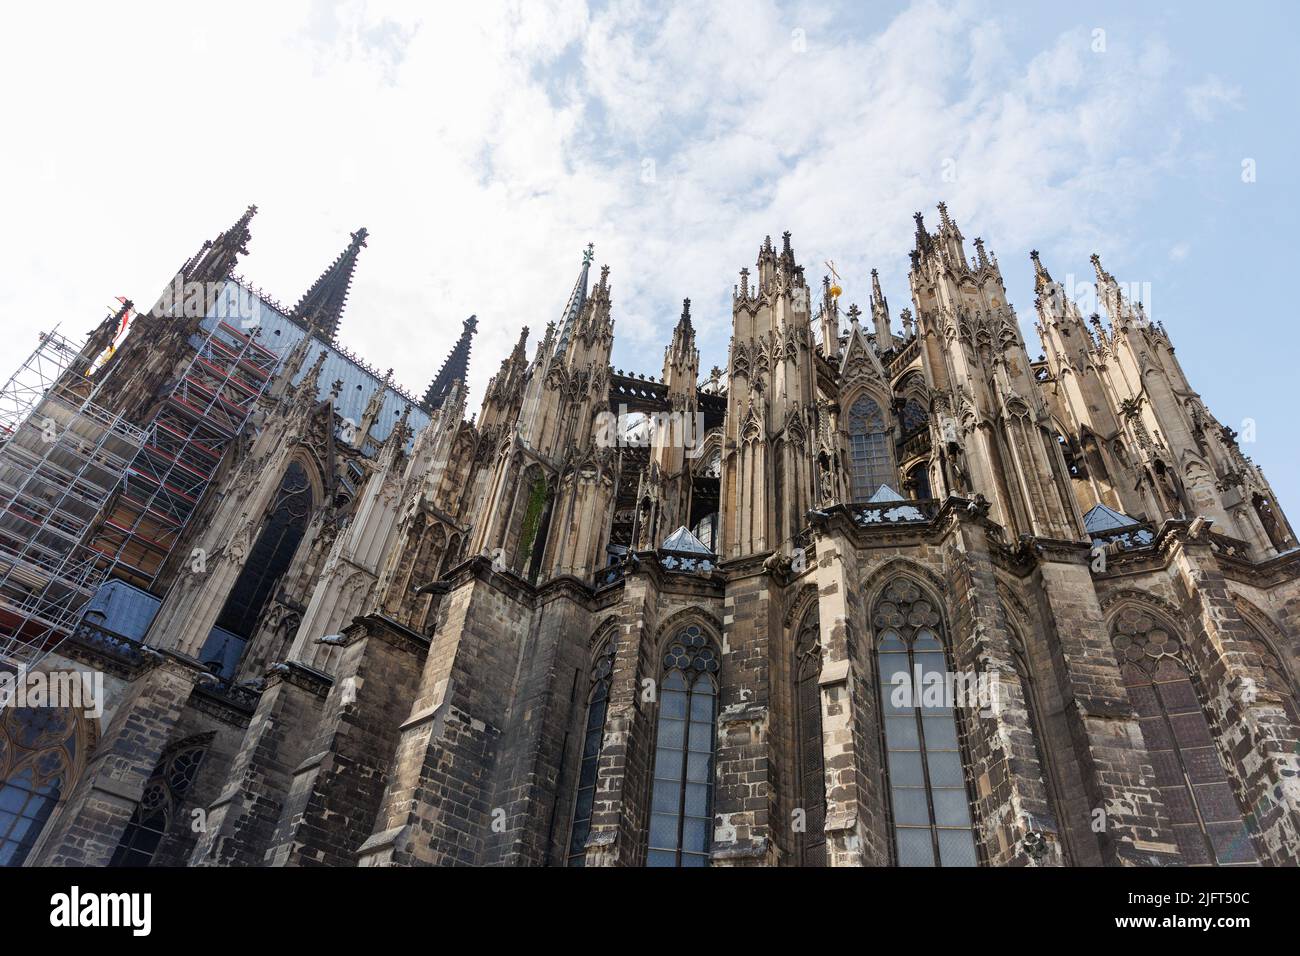 Der Kölner Dom ist ein katholischer Dom in Köln, Nordrhein-Westfalen. Es ist der Sitz des Erzbischofs von Köln. Gotische Architektur Stockfoto